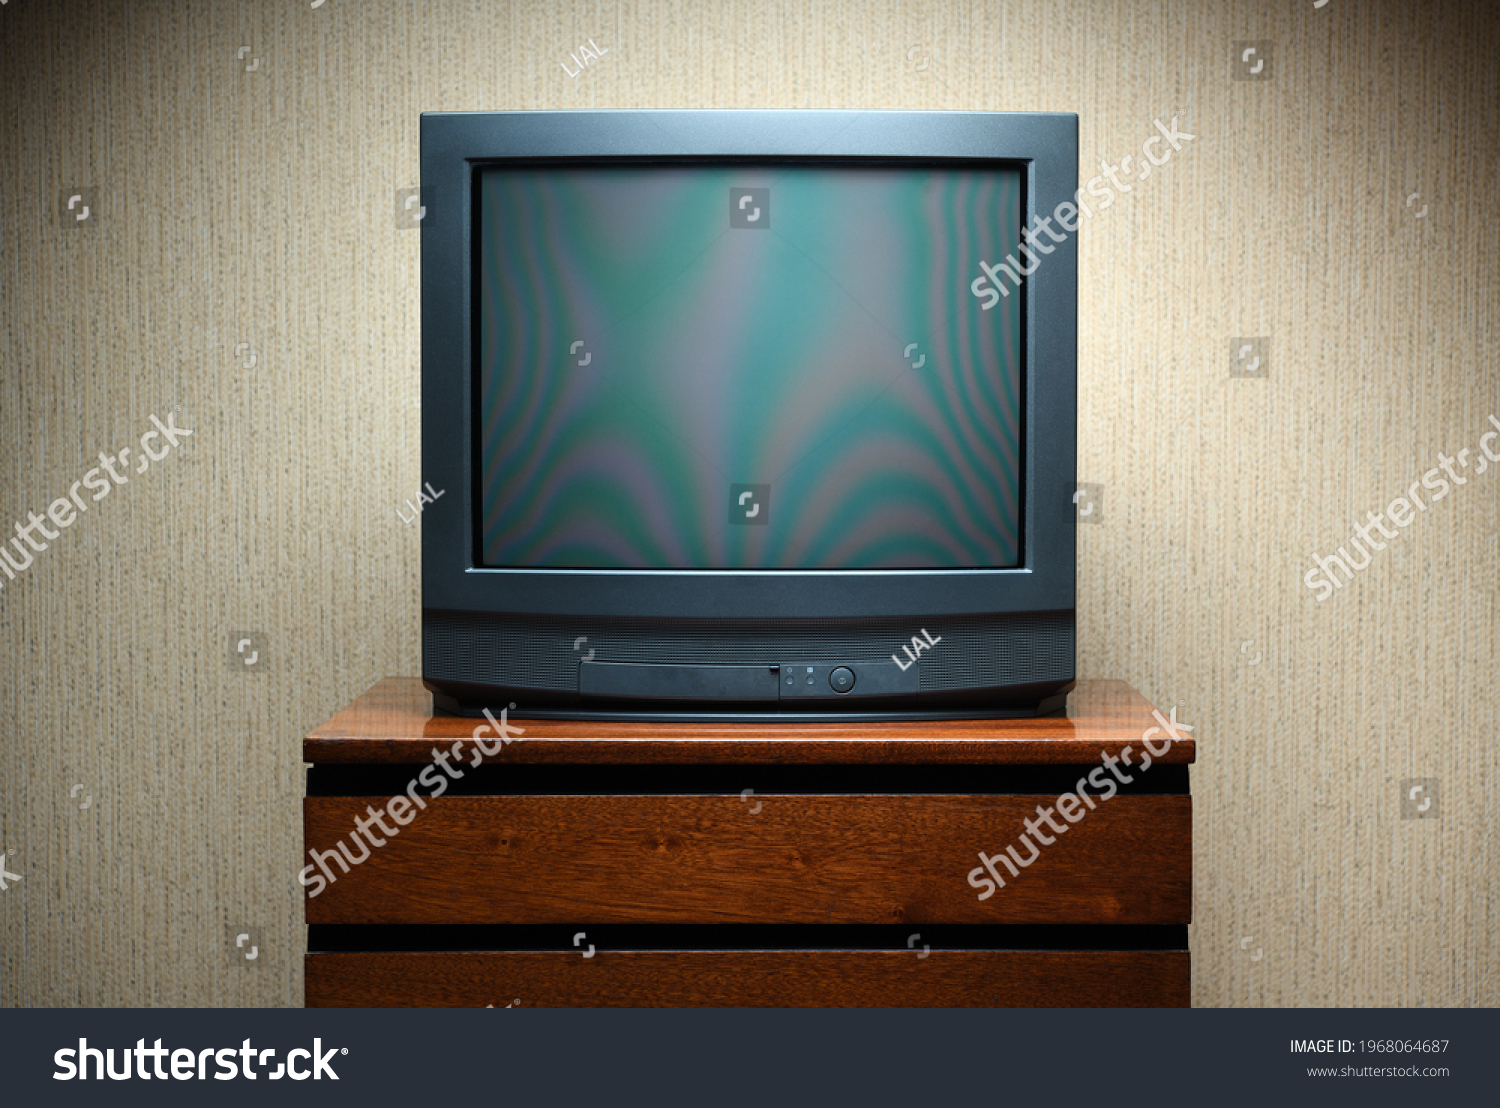 Vintage TV on wooden antique closet, old design in a home.Old black vintage TV. #1968064687